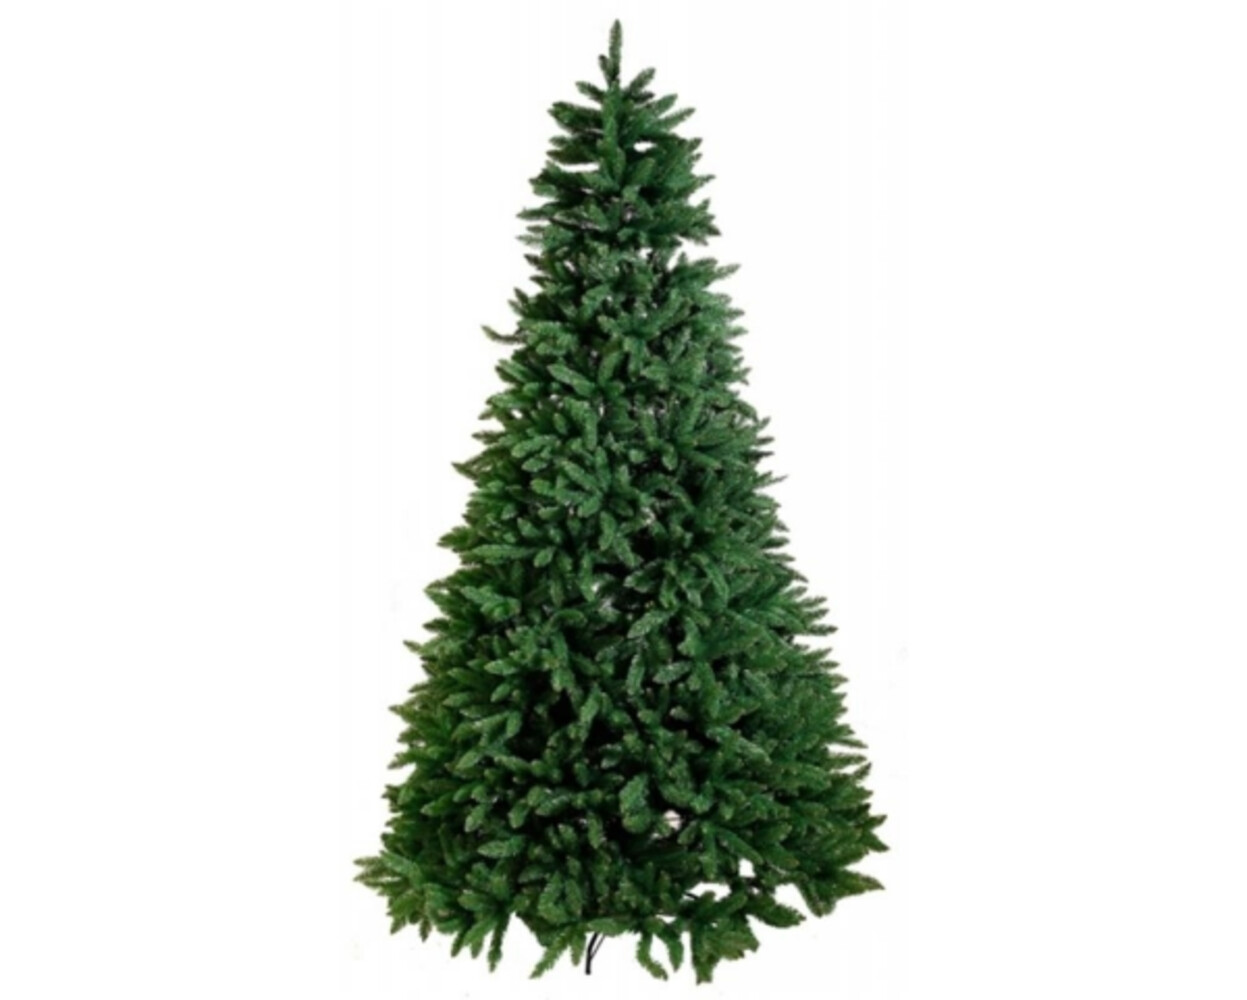 Prachtvoller grüner Weihnachtsbaum von Star Trading mit robustem Metallfuß für Outdoor-Einsatz